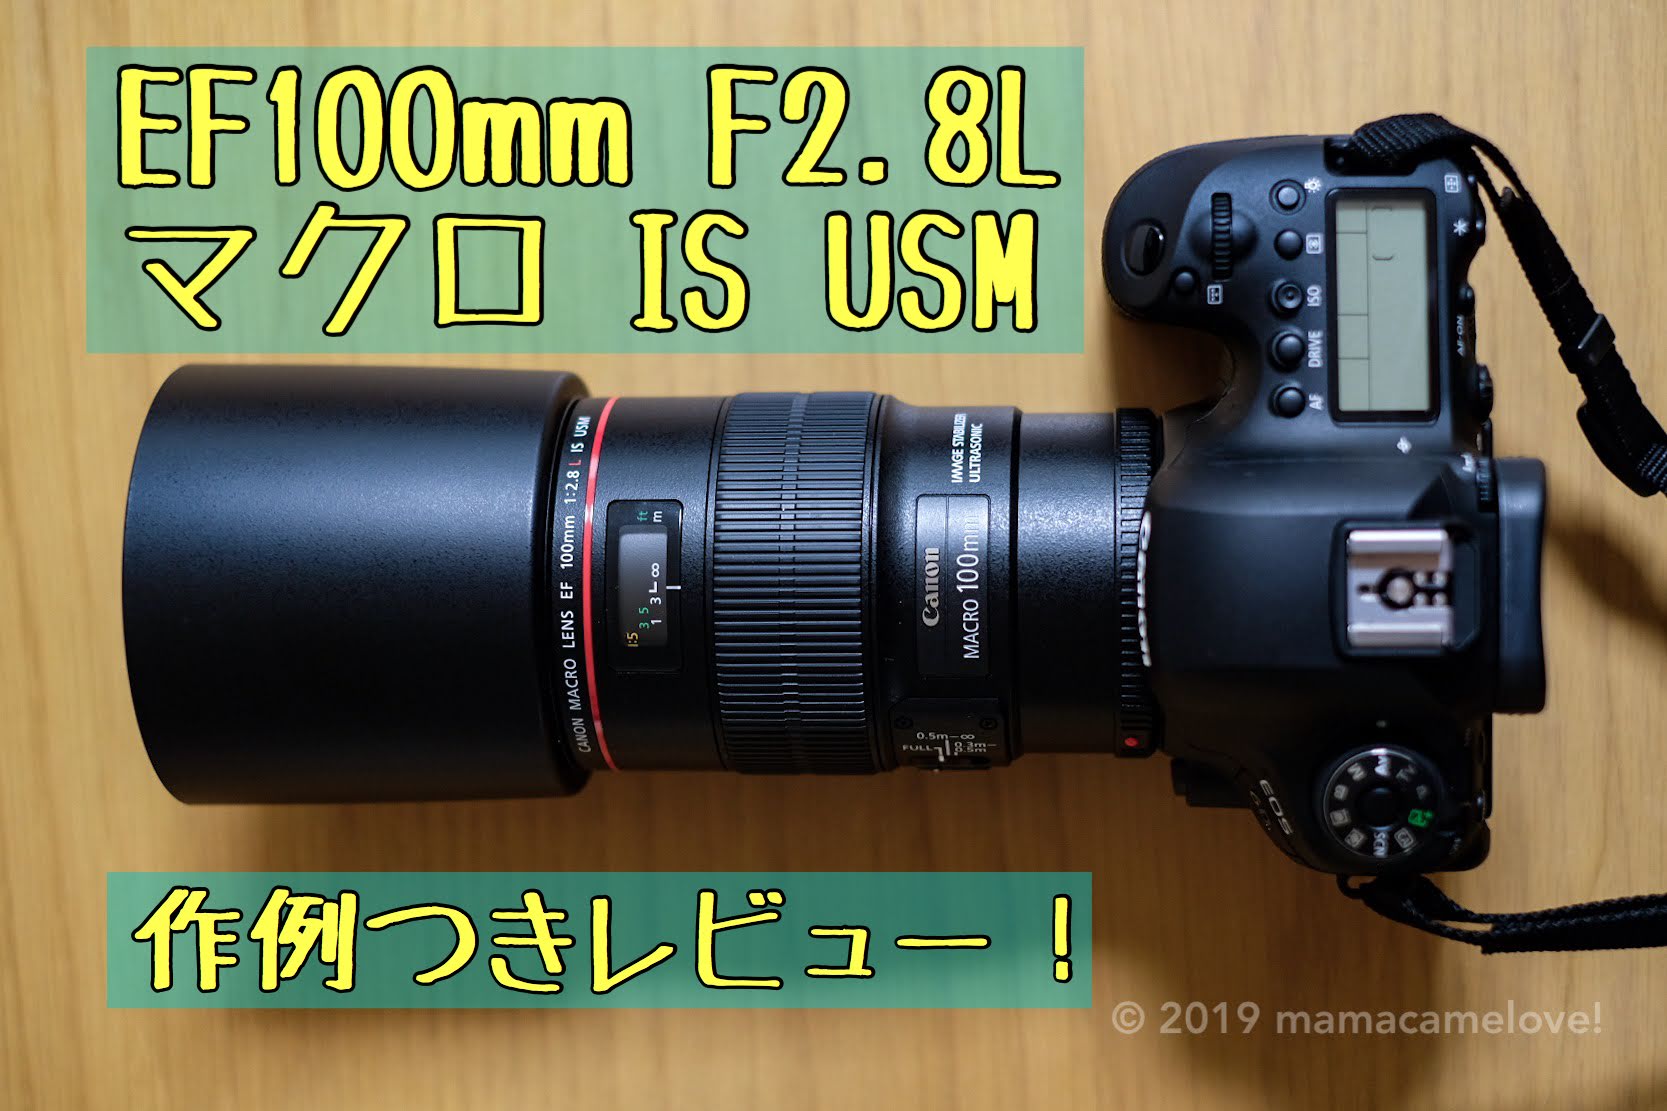 Canon EF100F2.8Lマクロ IS USM その他 カメラ 家電・スマホ・カメラ 海外 正規品